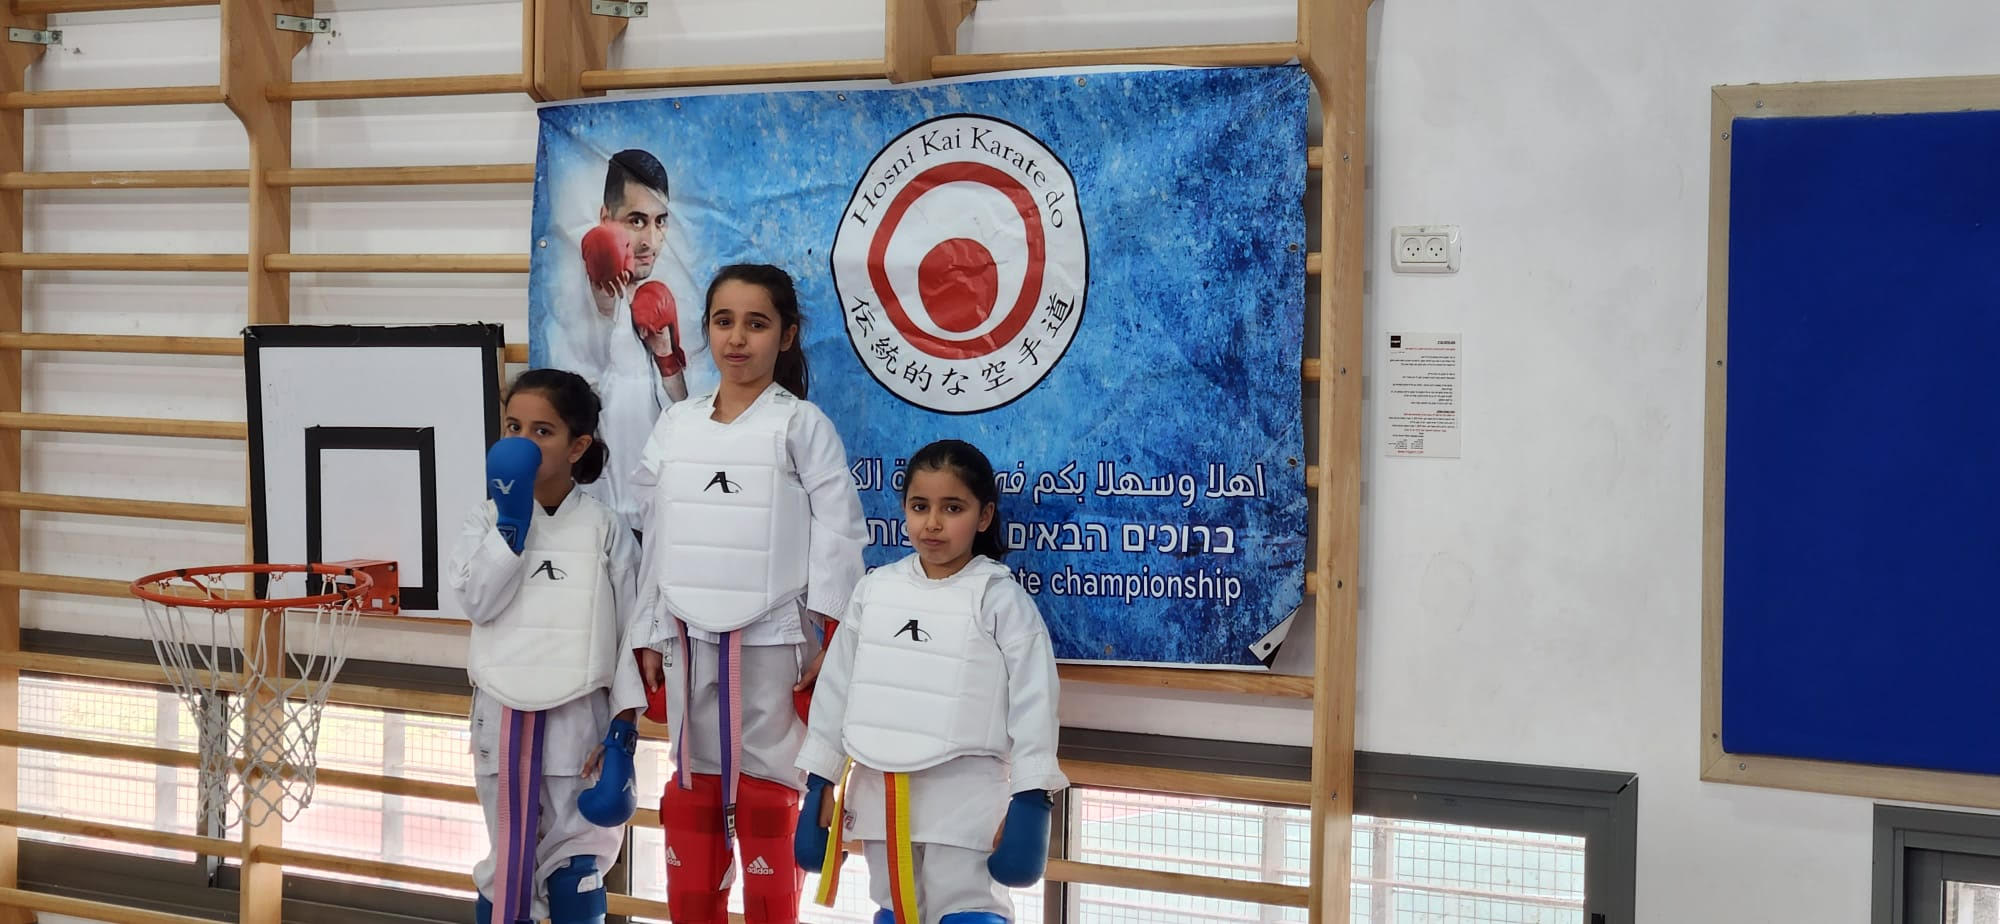 بطولة الكراتيه القطرية في الطيرة من تنظيم مدرسة hosni kai karate